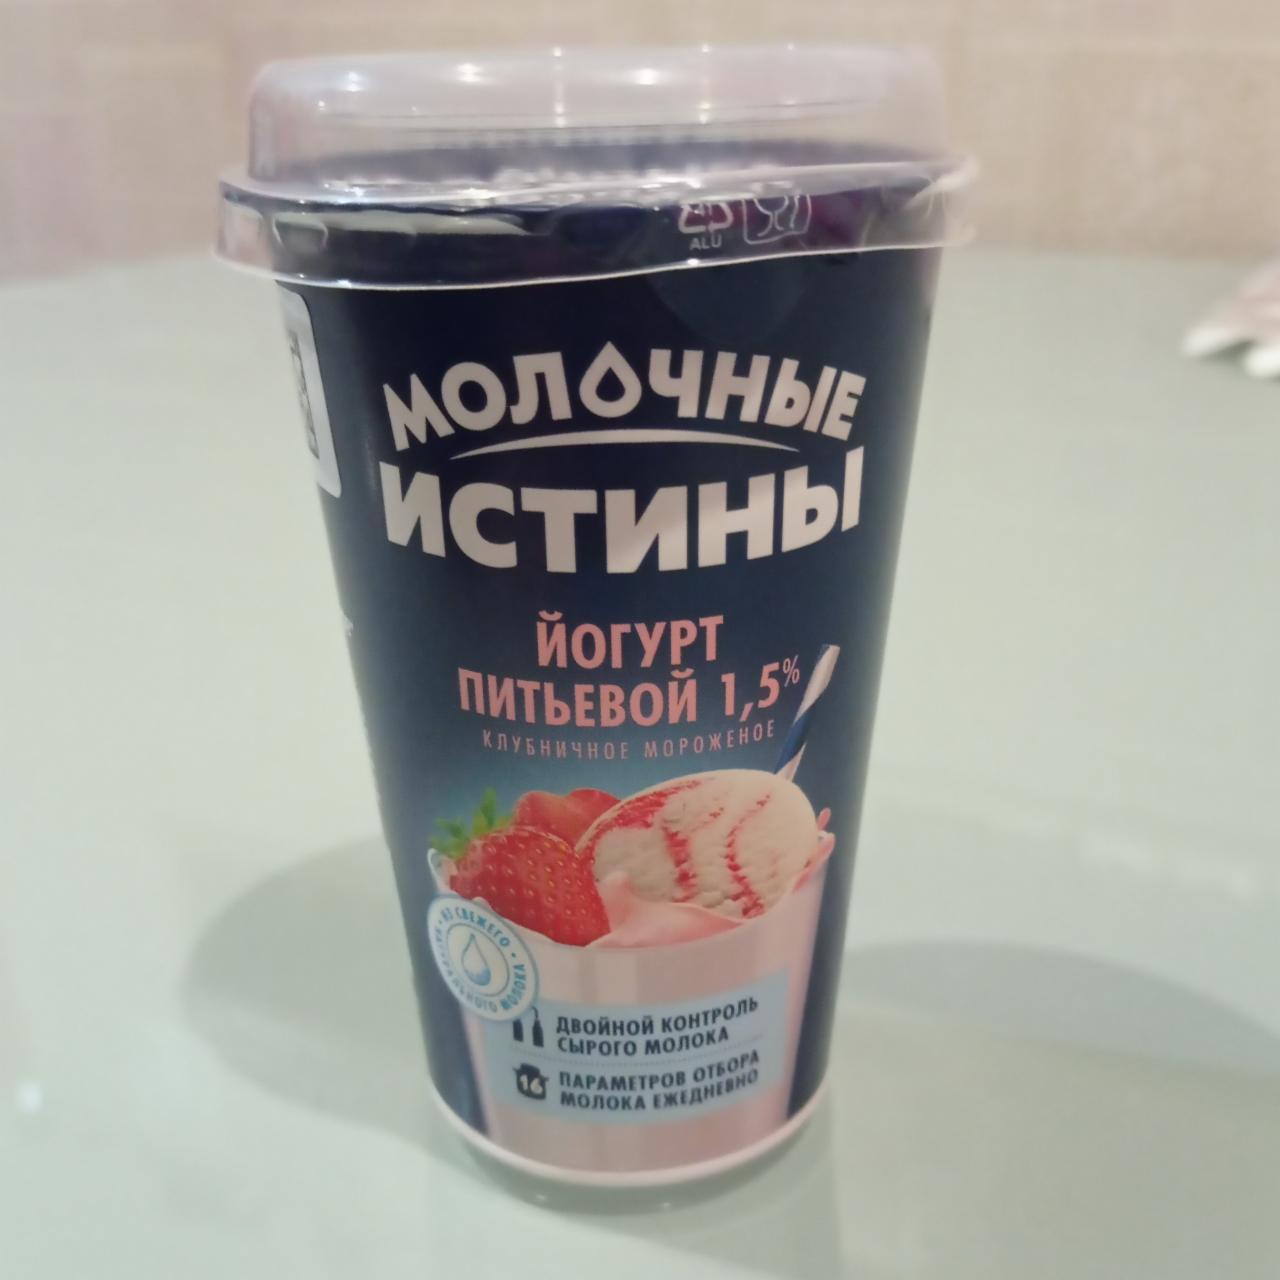 Фото - Йогурт питьевой 1,5% клубничное мороженое Молочные истины